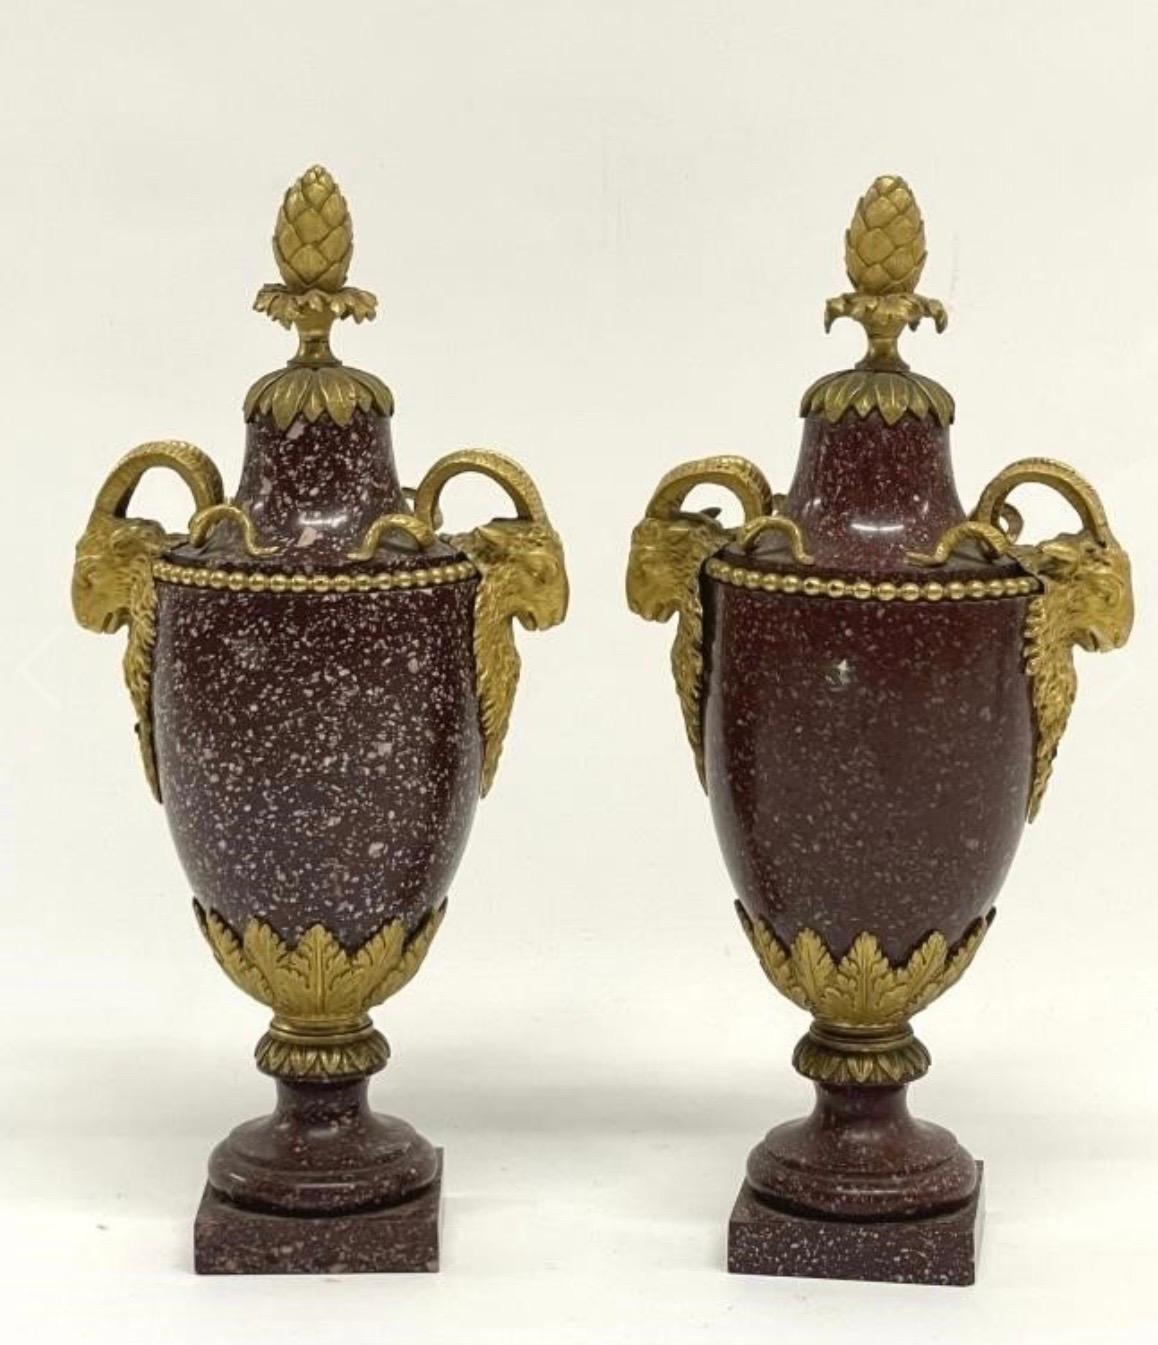 Les montures sont similaires à celles de Gouthière. L'un des vases présente plus de mouchetures blanches dans le porphyre que l'autre.